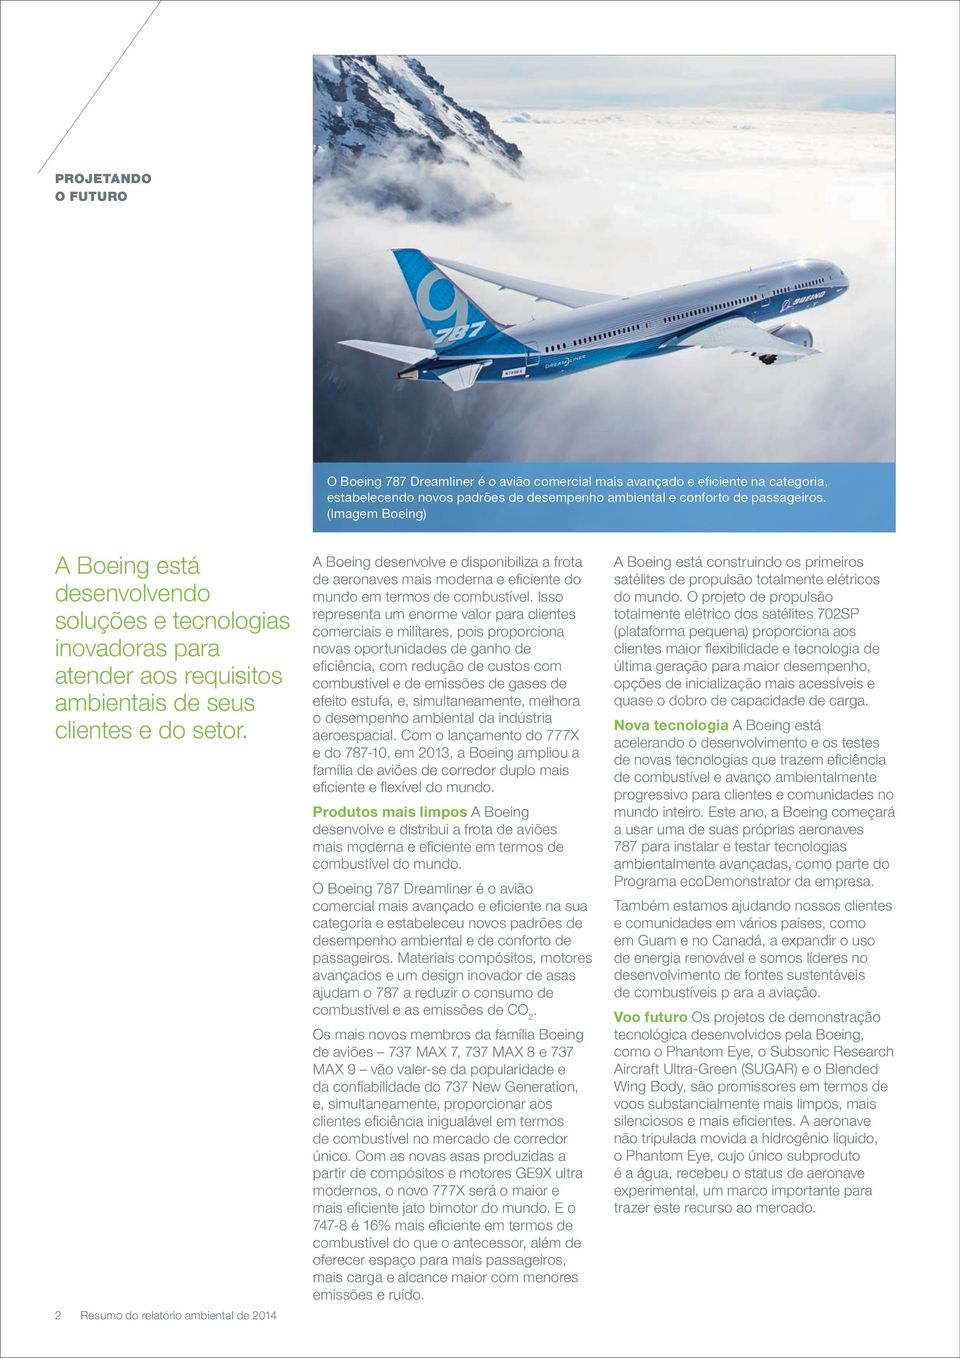 2 Resumo do relatório ambiental de 2014 A Boeing desenvolve e disponibiliza a frota de aeronaves mais moderna e eficiente do mundo em termos de combustível.